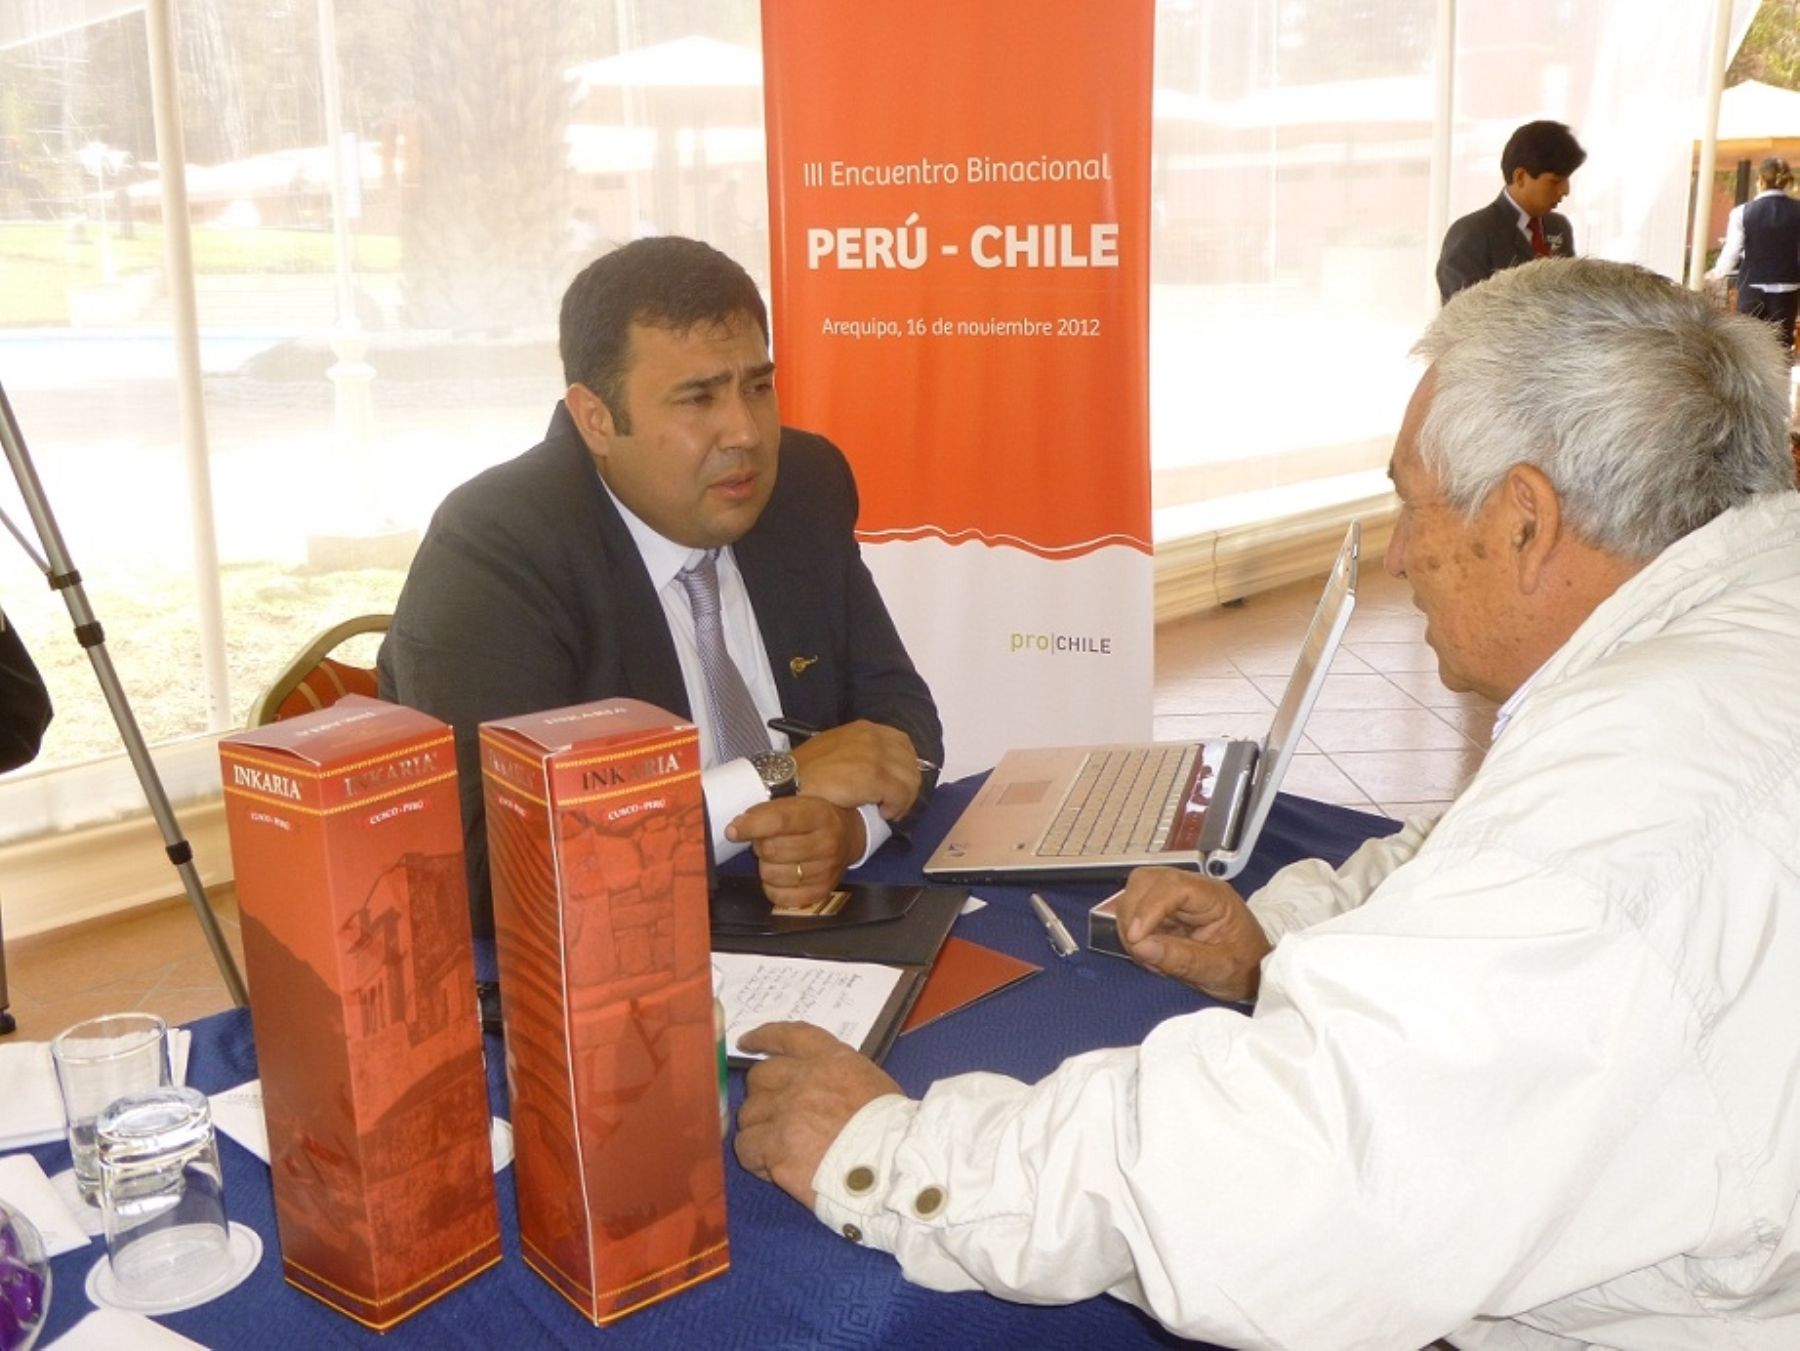 III Encuentro Empresarial Perú – Chile realizado el 16 de noviembre en Arequipa.